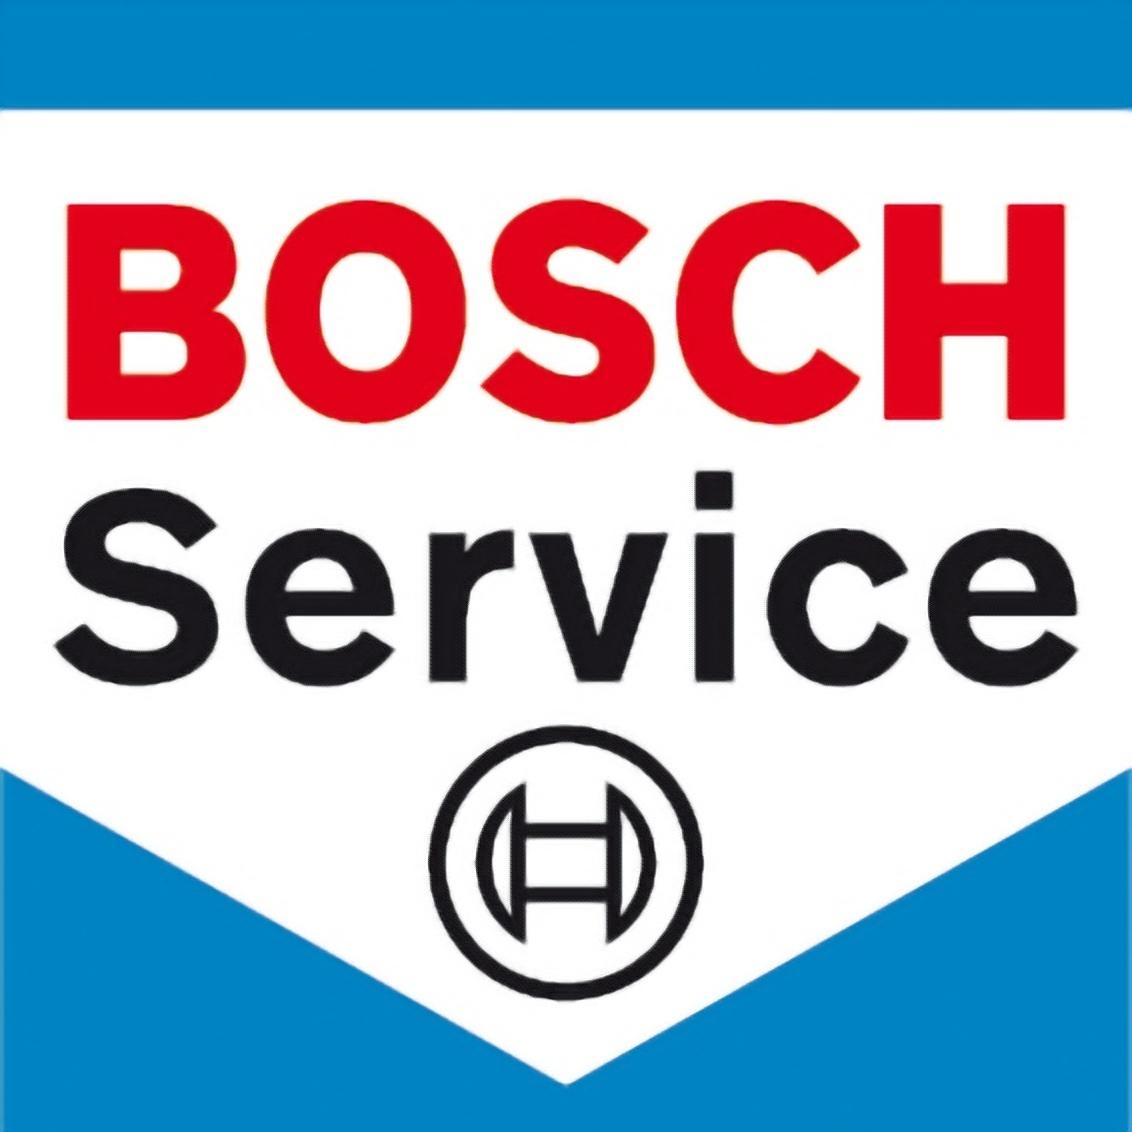 Garage Pollet  -  Bosch Car Service Nieppe